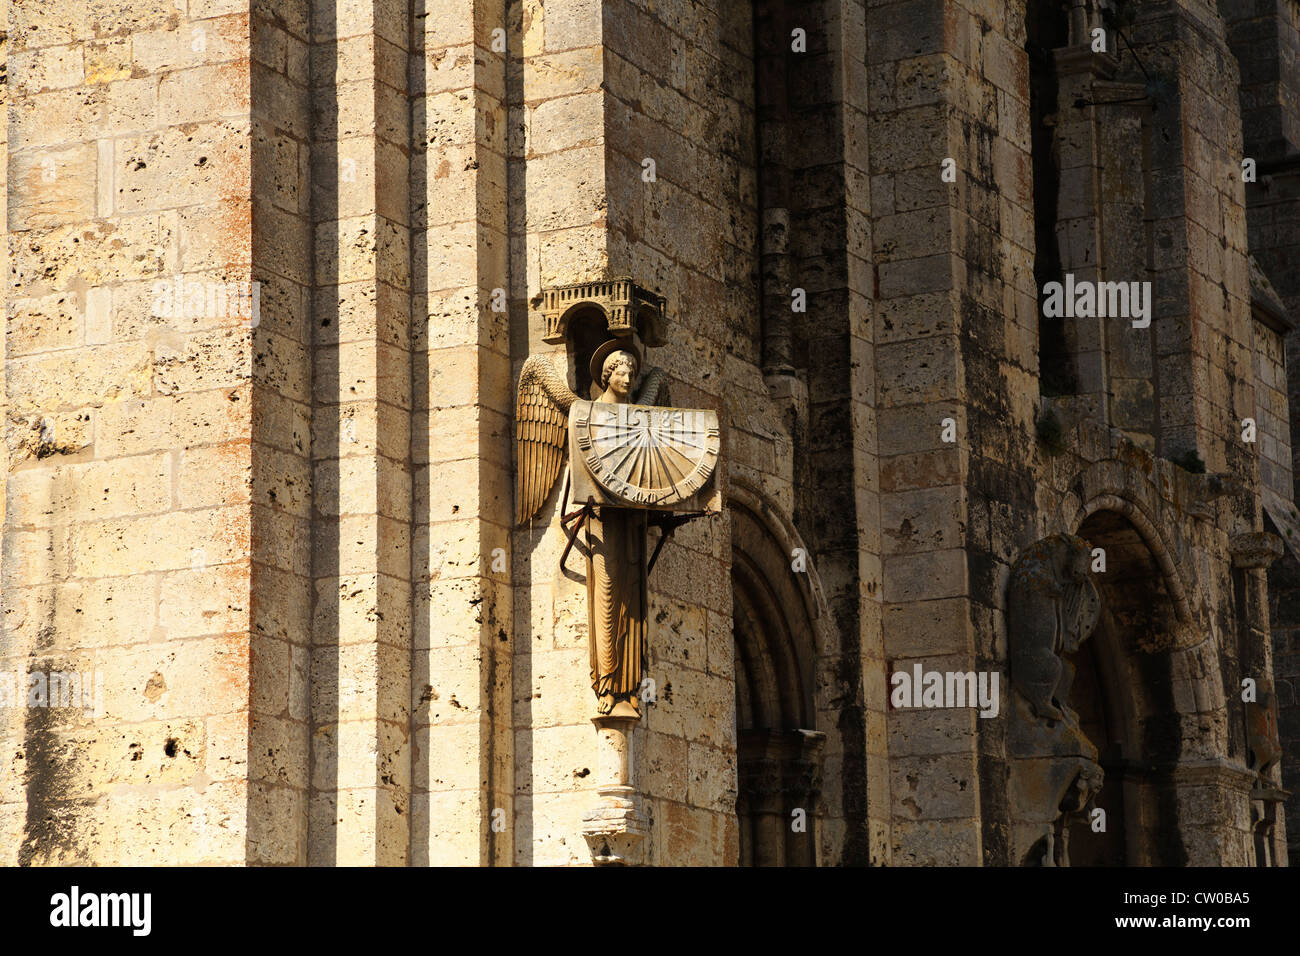 La cattedrale di Chartres, Francia. Meridiana sulla facciata sud della cattedrale del XIII secolo. Foto Stock